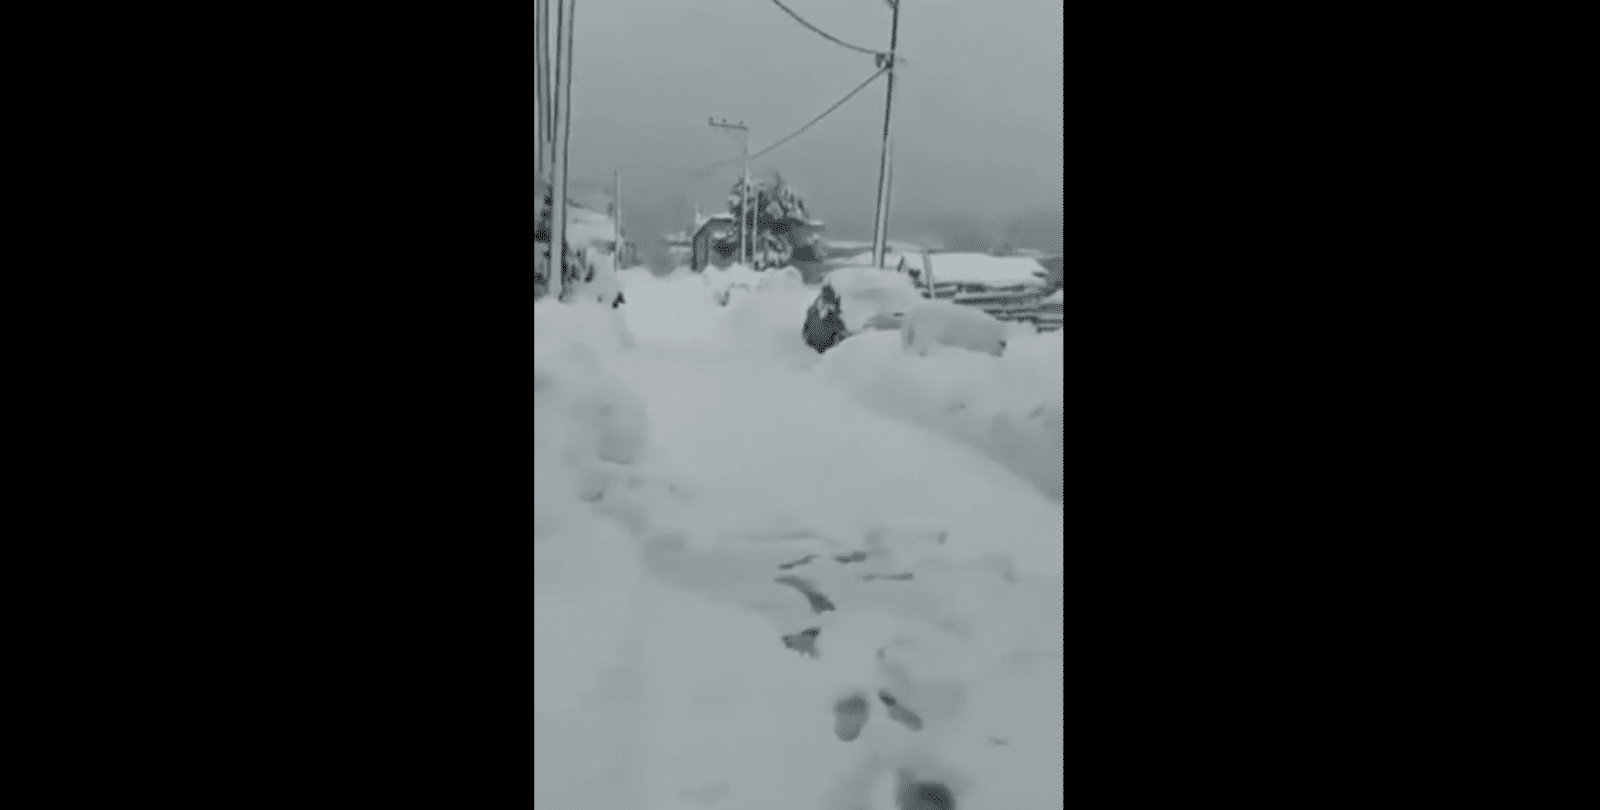 Griekenland krijgt monsterhoeveelheid sneeuw, pak van 4 meter en mensen zaten 10 dagen opgesloten